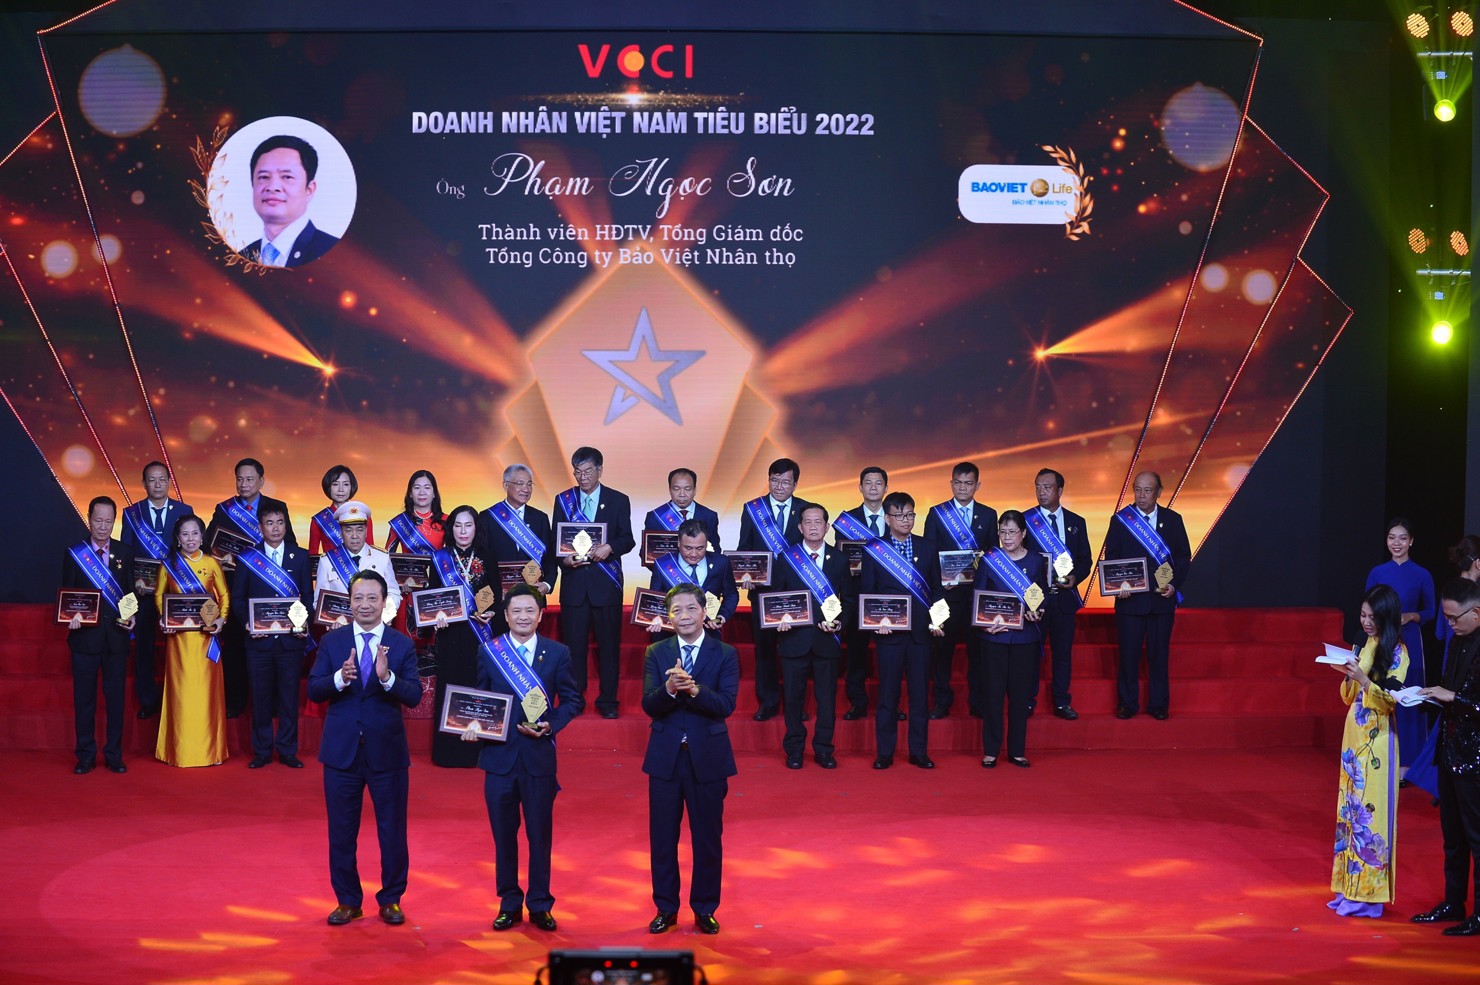 Ông Phạm Ngọc Sơn - Tổng Giám đốc Tổng Công ty Bảo Việt Nhân thọ vinh dự nhận danh hiệu “Doanh nhân Việt Nam tiêu biểu” năm 2022 